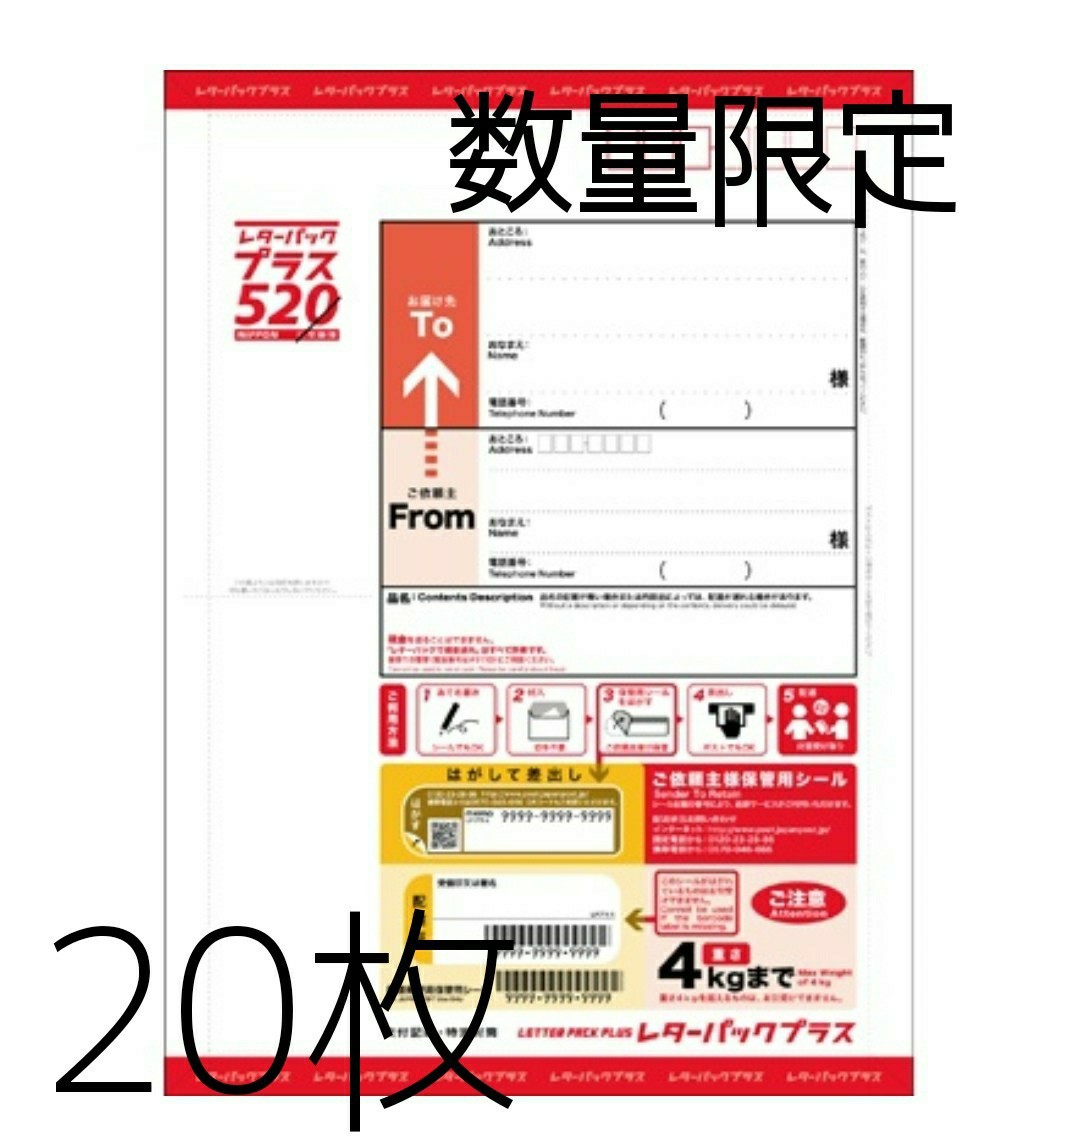 特価即納 レターパックプラス520円1800枚。の通販 by とし's shop